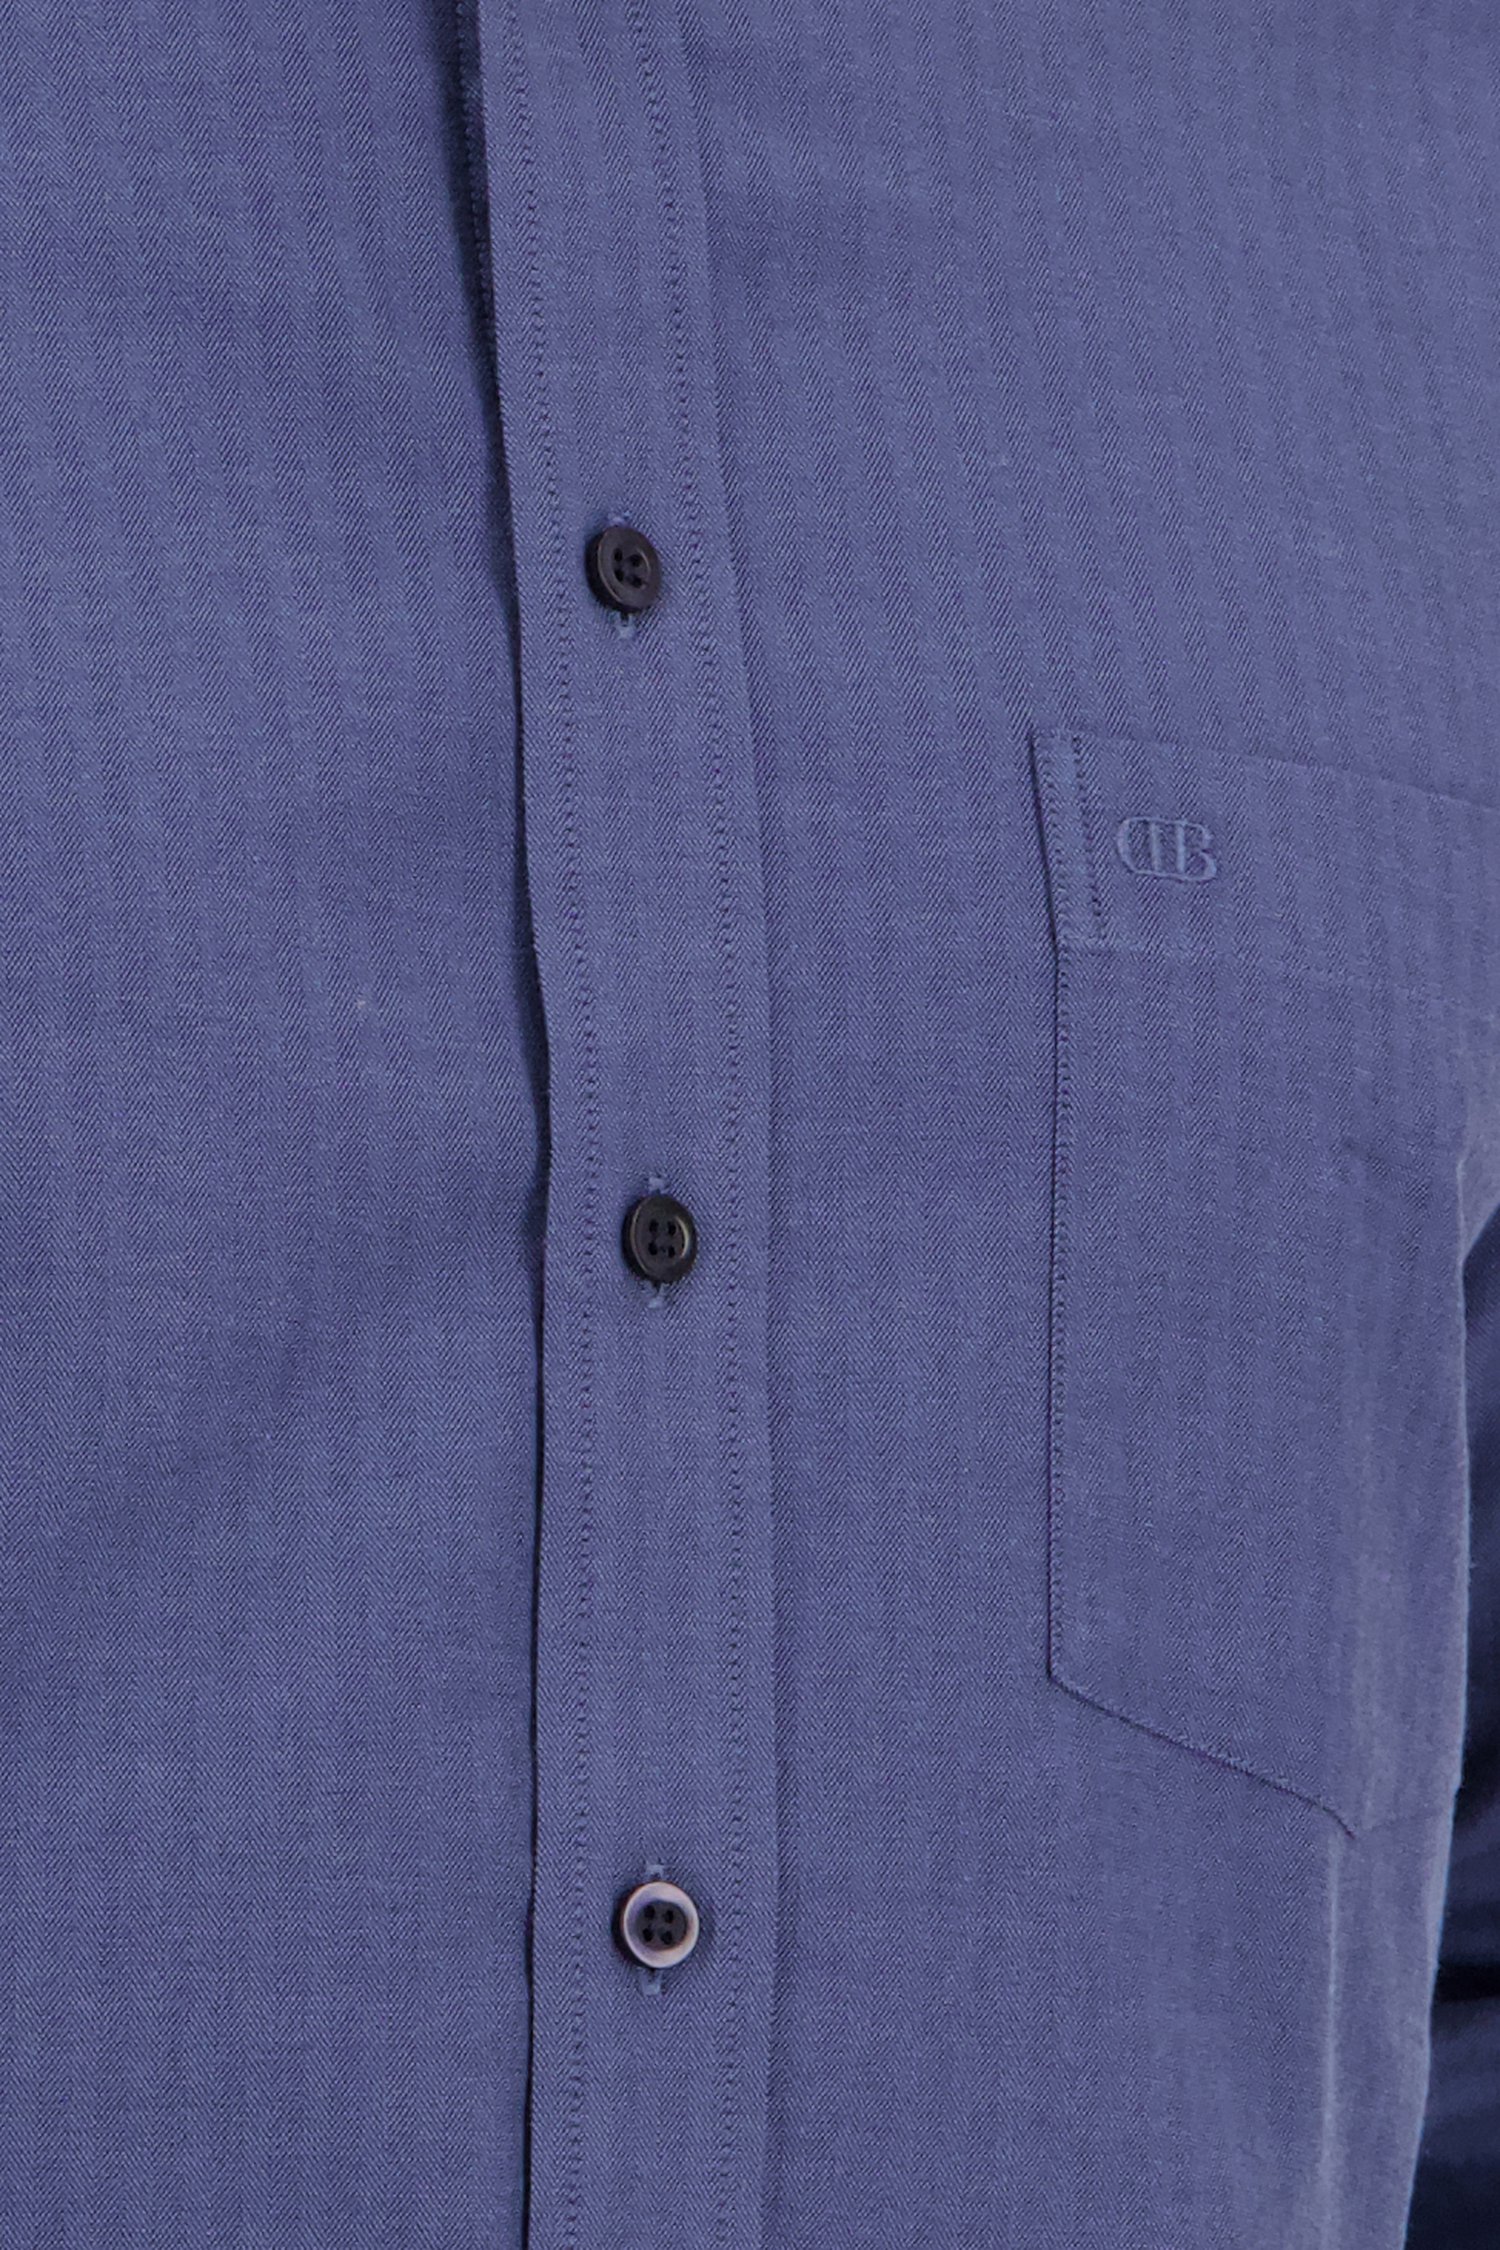 Blauw hemd - comfort fit van Dansaert Blue voor Heren